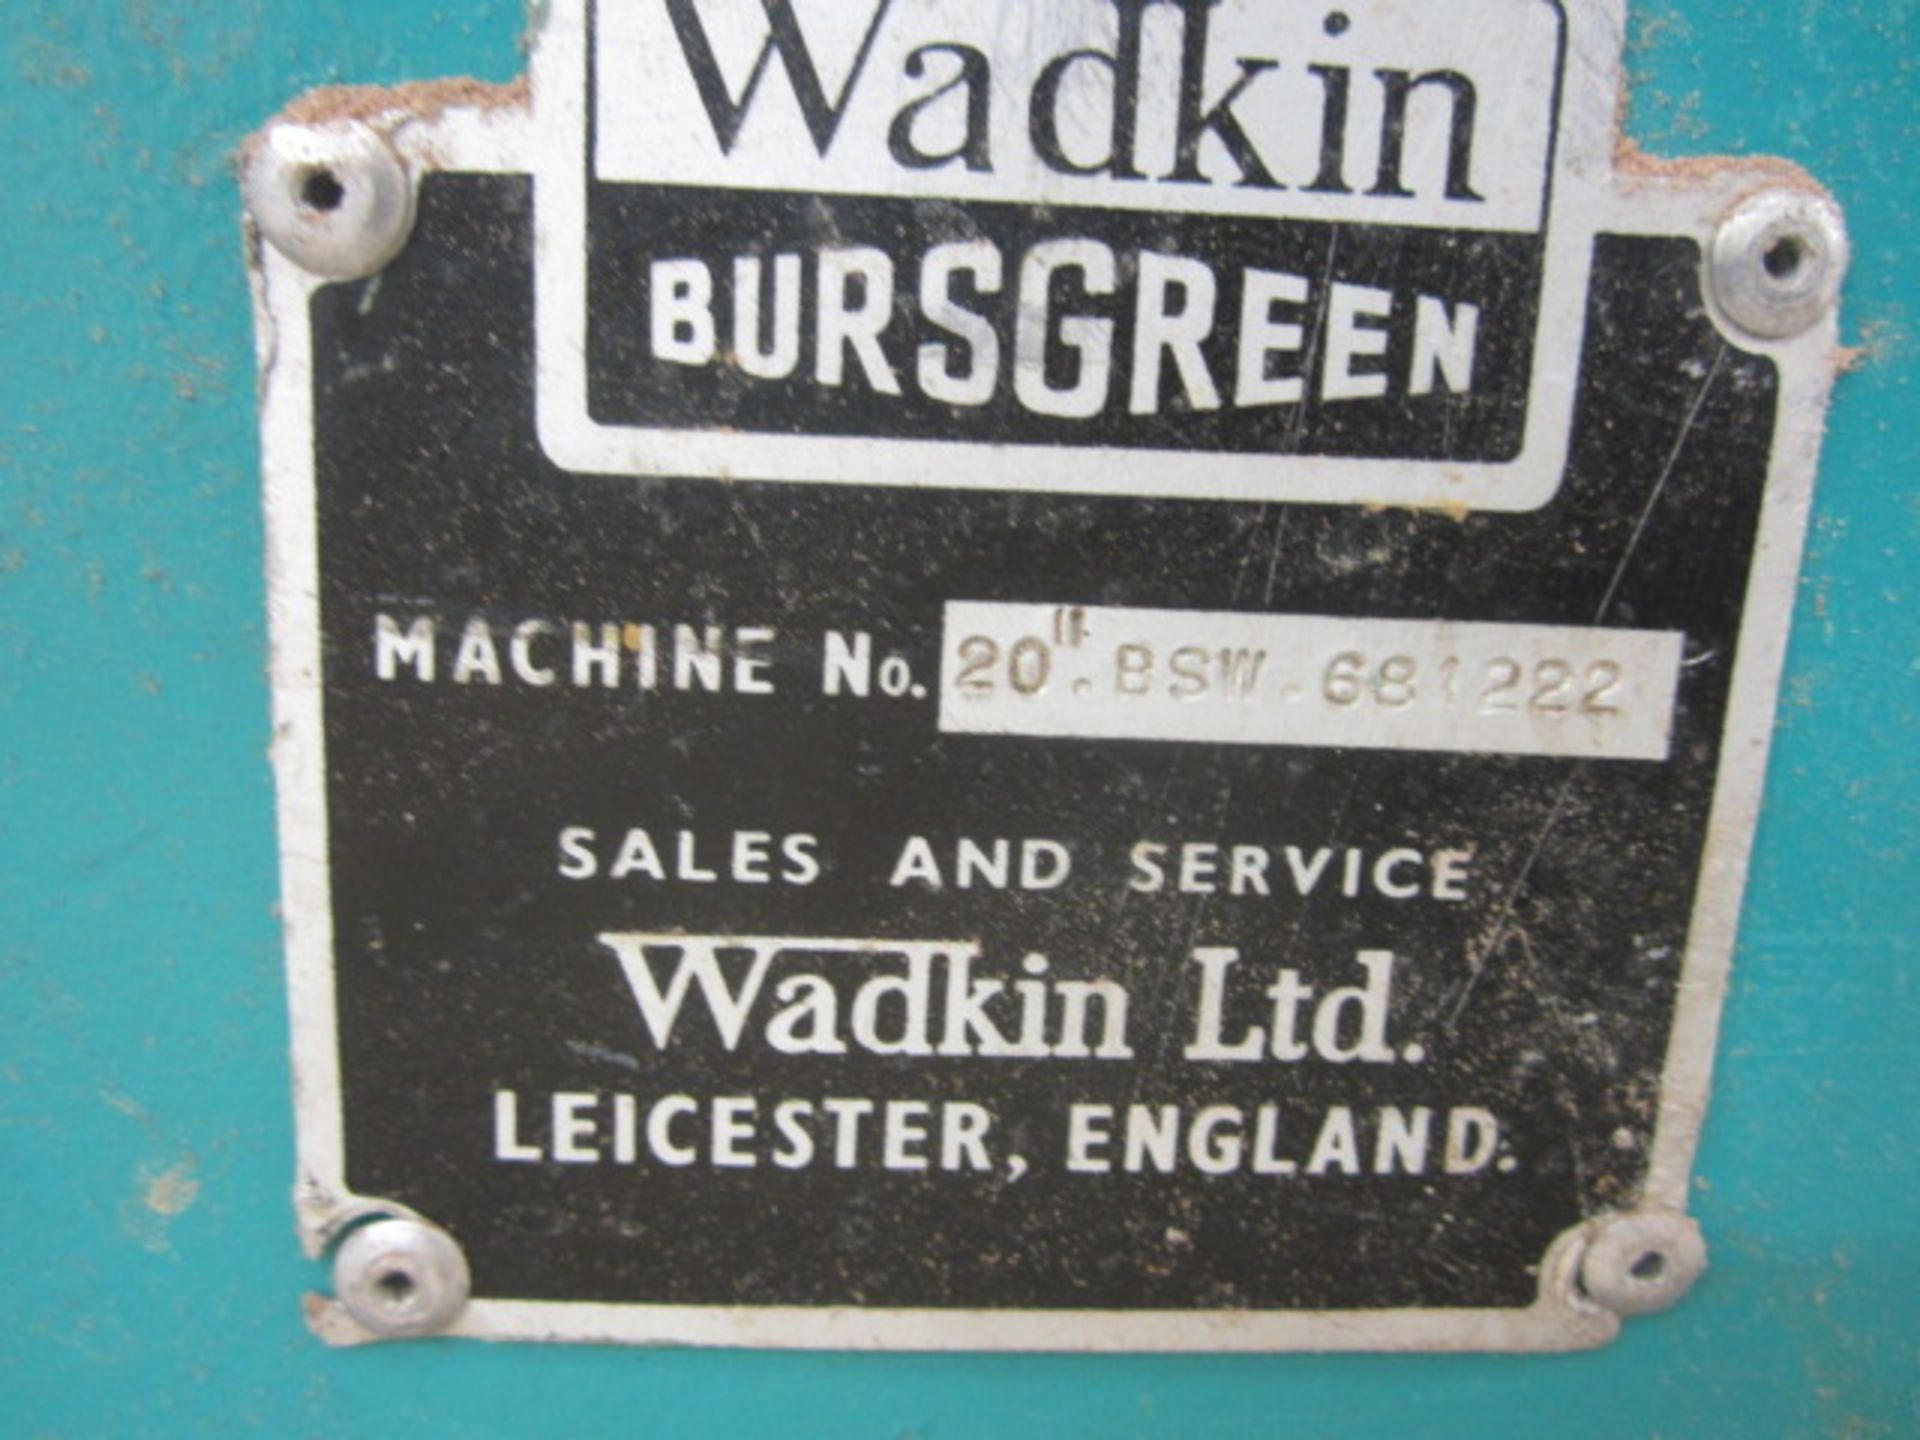 Wadkin Bursgreen 20" circular rip saw, serial no: BSW 661222 with SX9033N starter brake module - Image 2 of 6